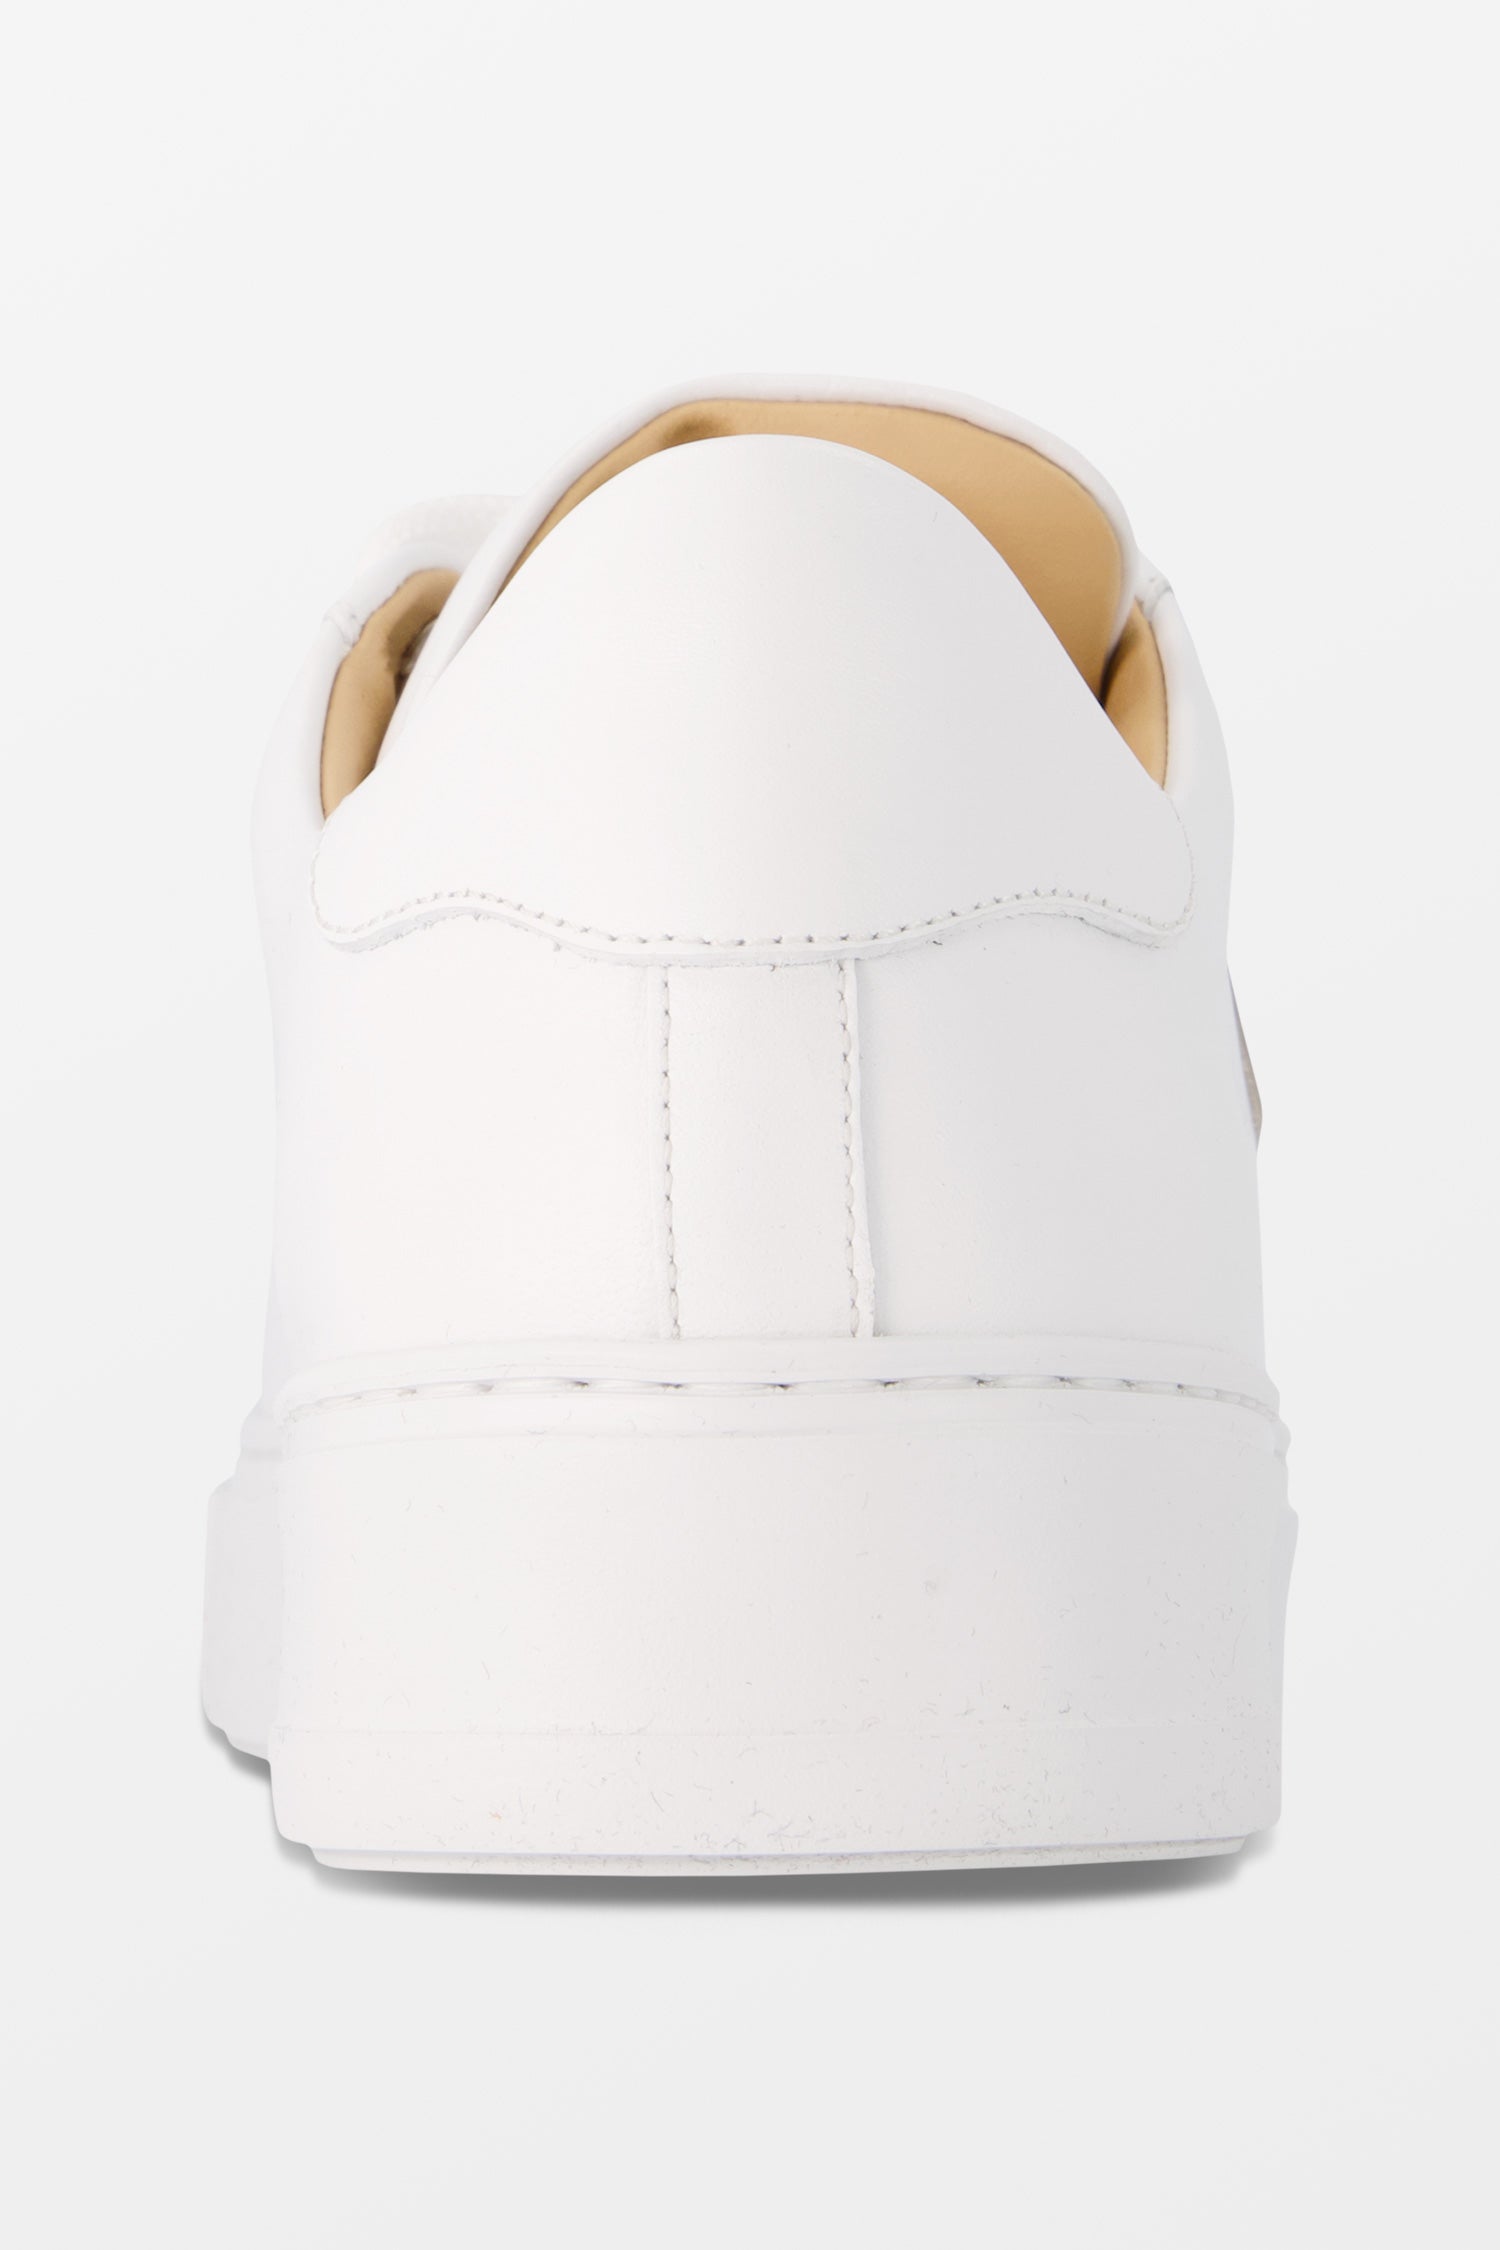 Philipp Plein White Leather Lo-Top The Plein Original TM Sneakers